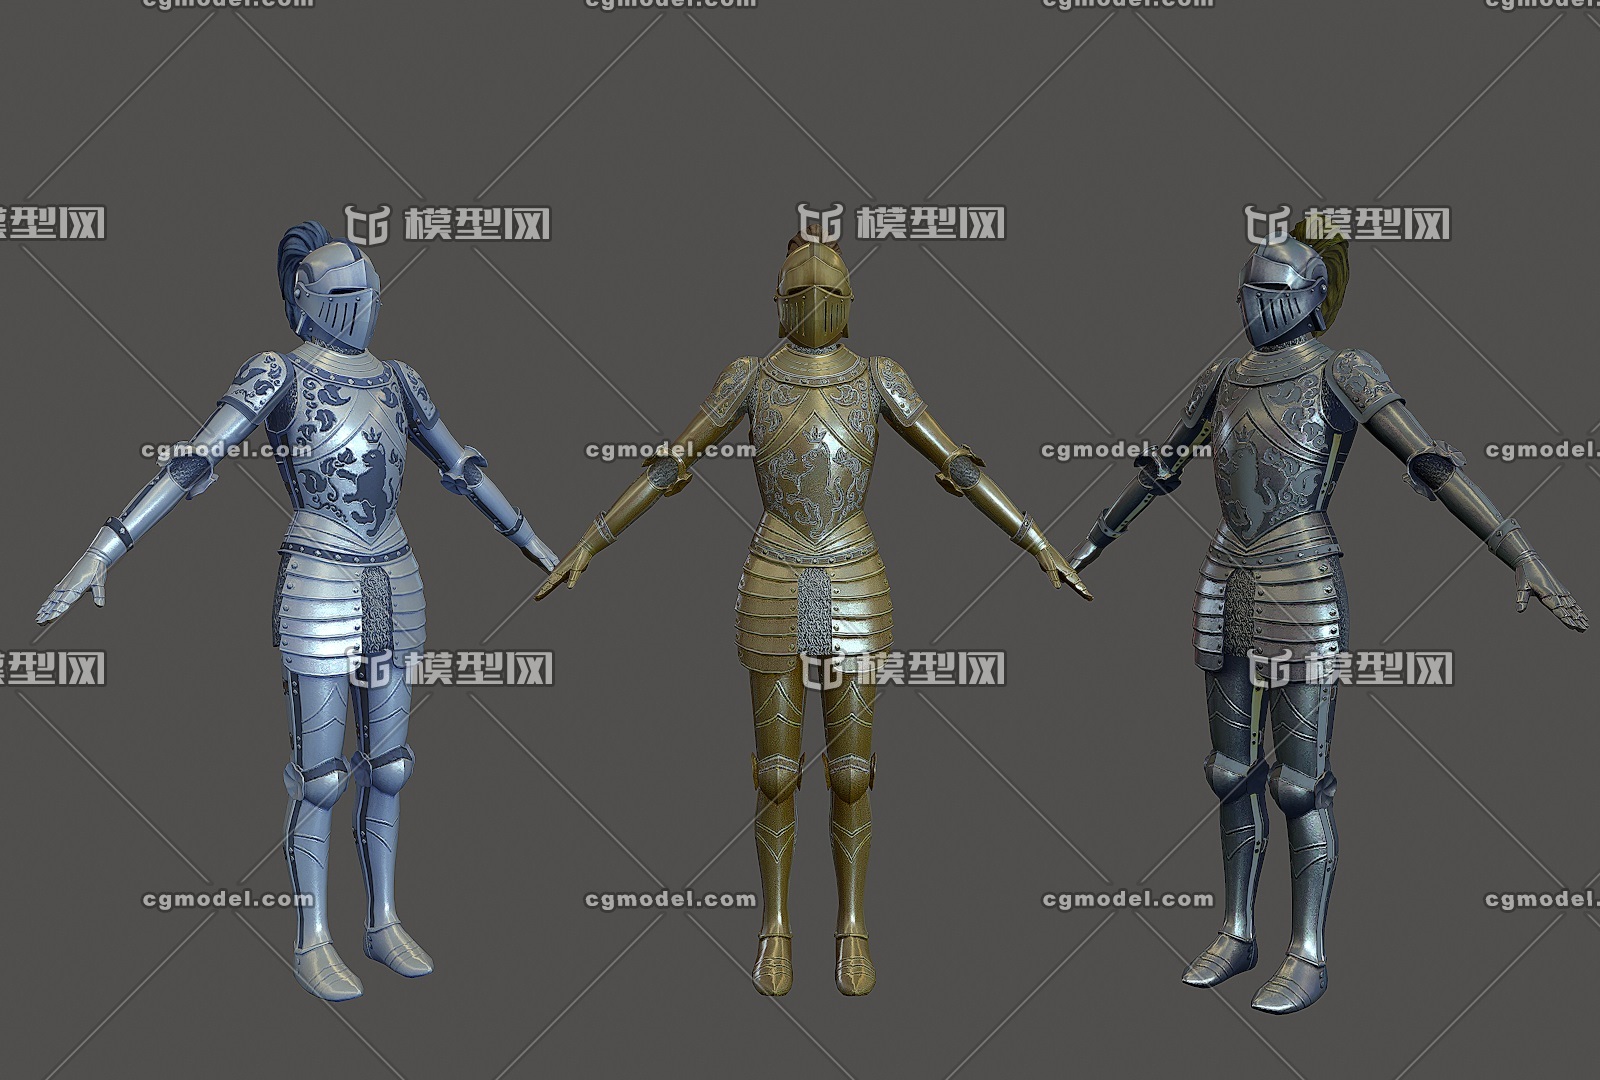 次世代 女骑士盔甲 西方骑士盔甲 中世纪 knight armor